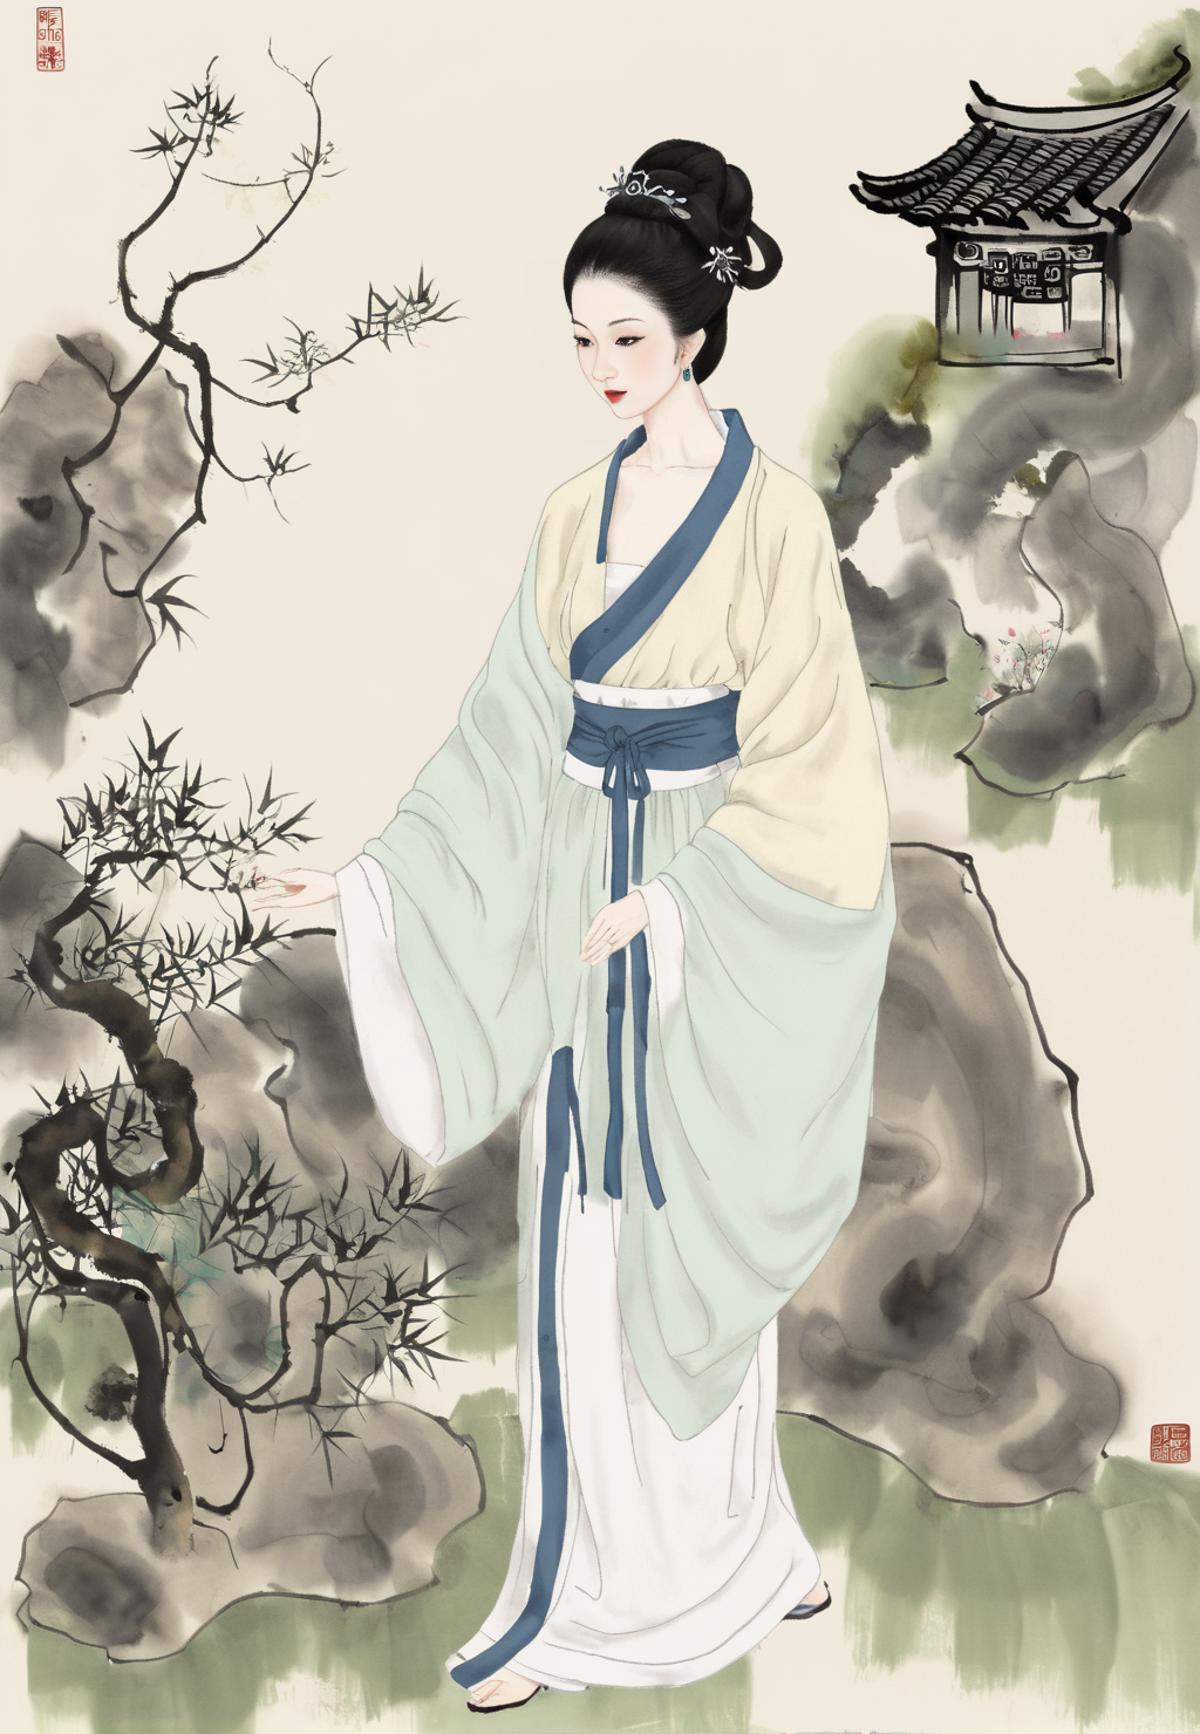 国画 Chinese Painting | 水墨江南(Ink Jiangnan) image by FMsunyh